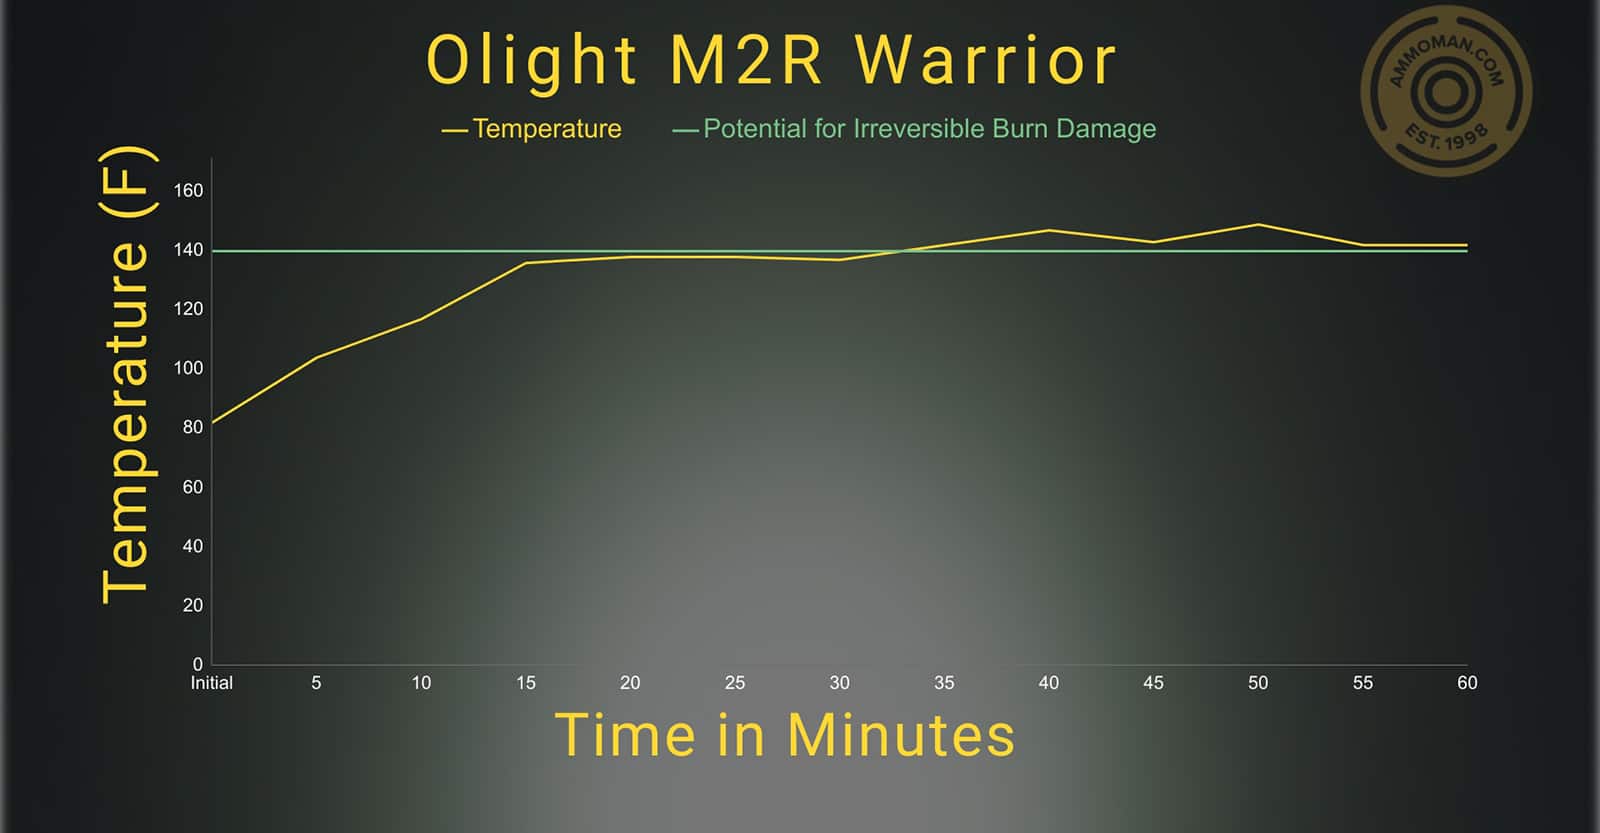 OLight M2R Warrior temperature profile